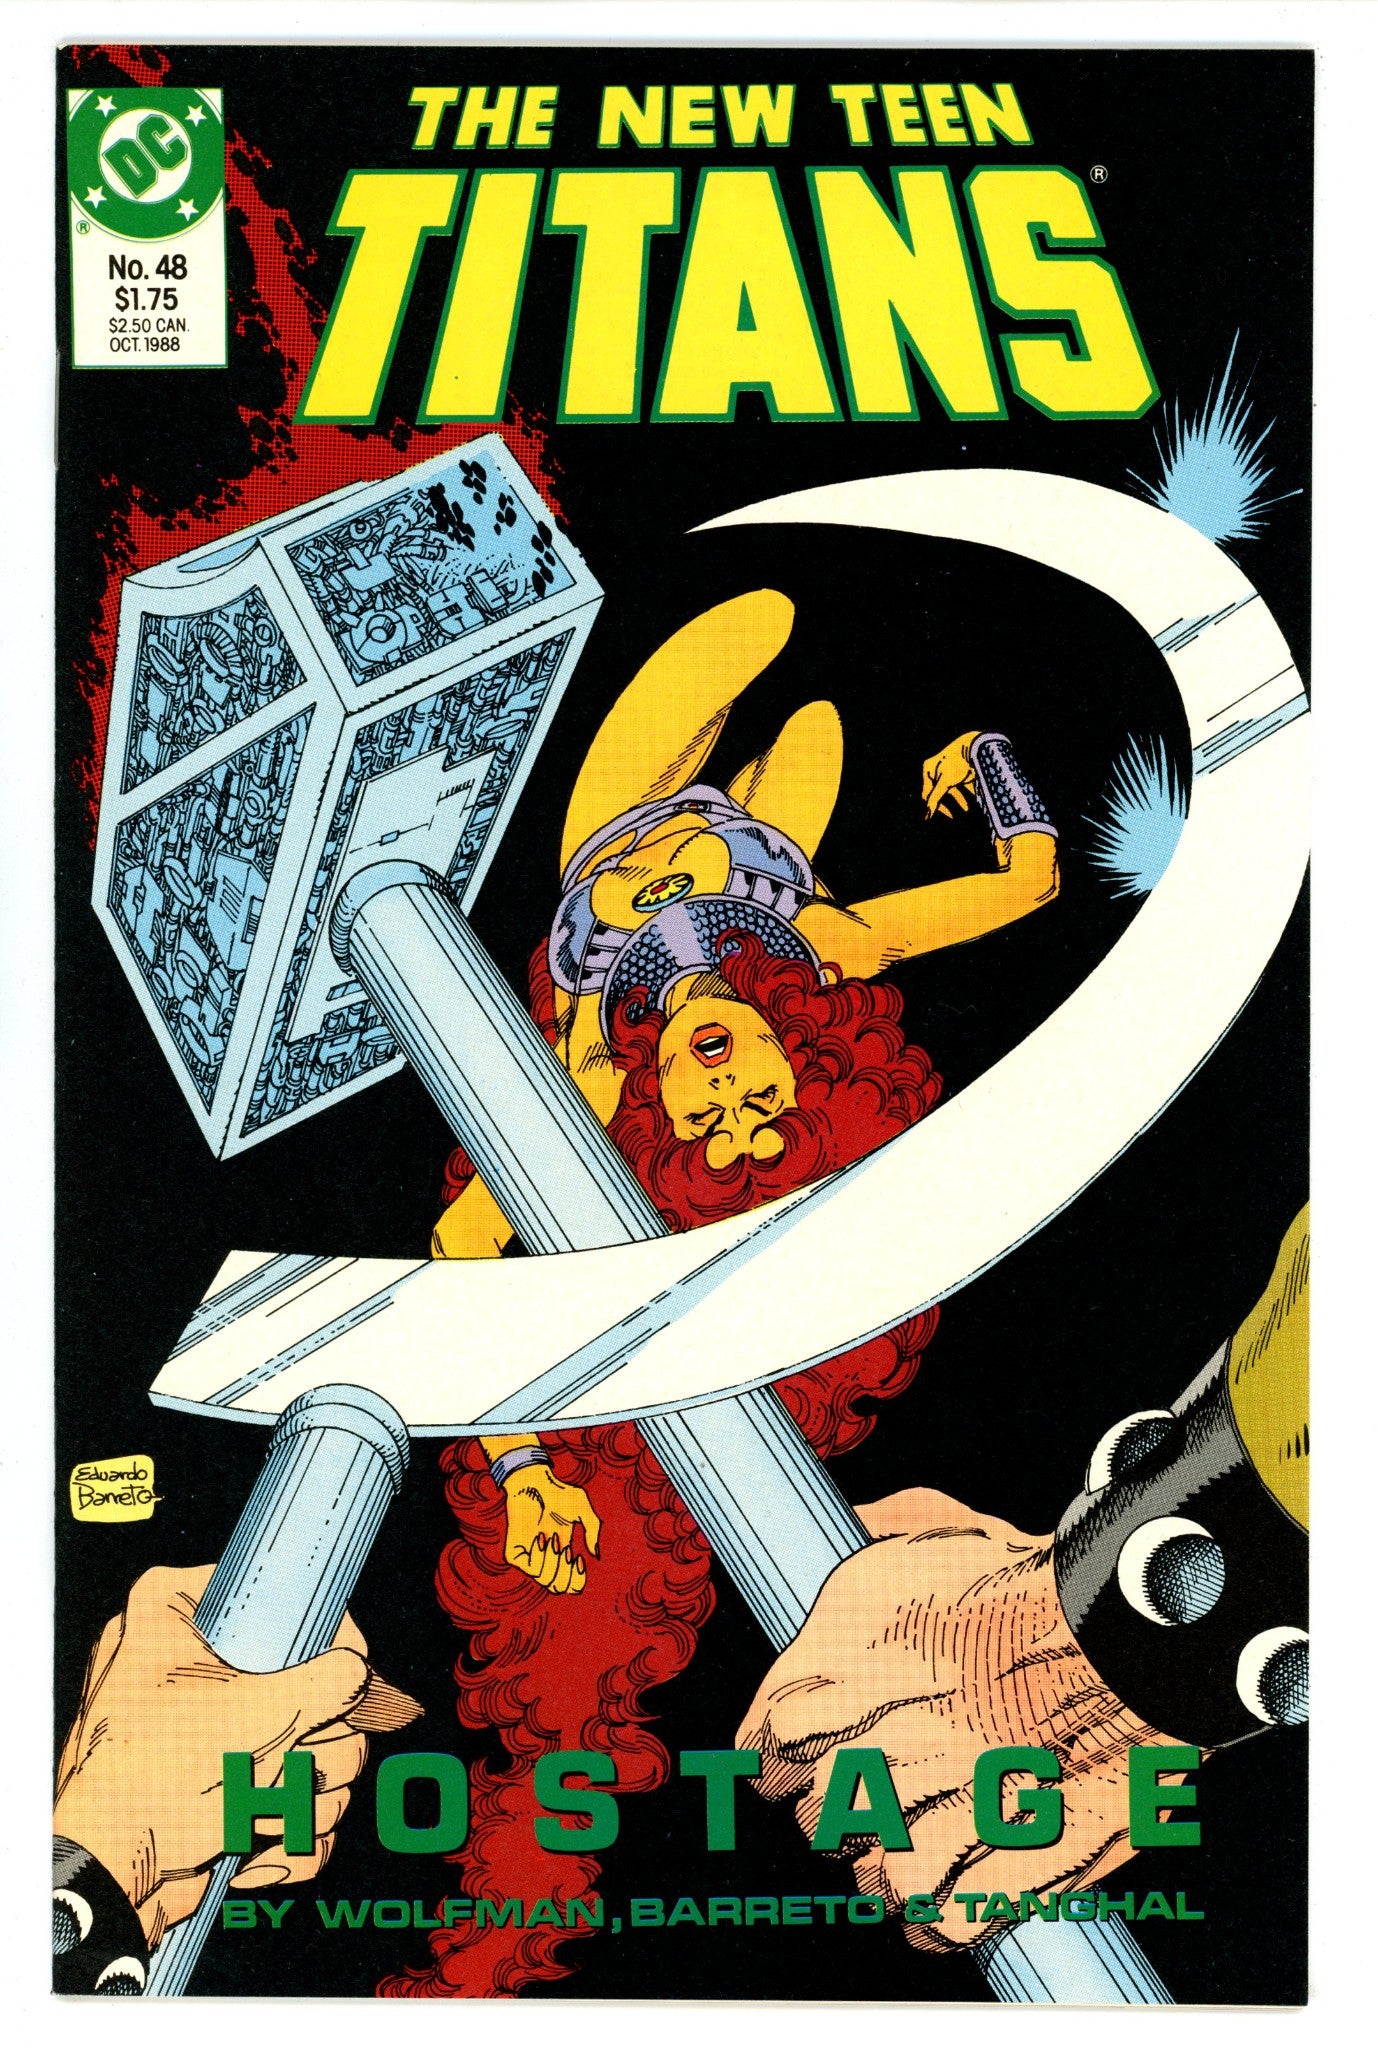 The New Teen Titans Vol 2 48 High Grade (1988) 